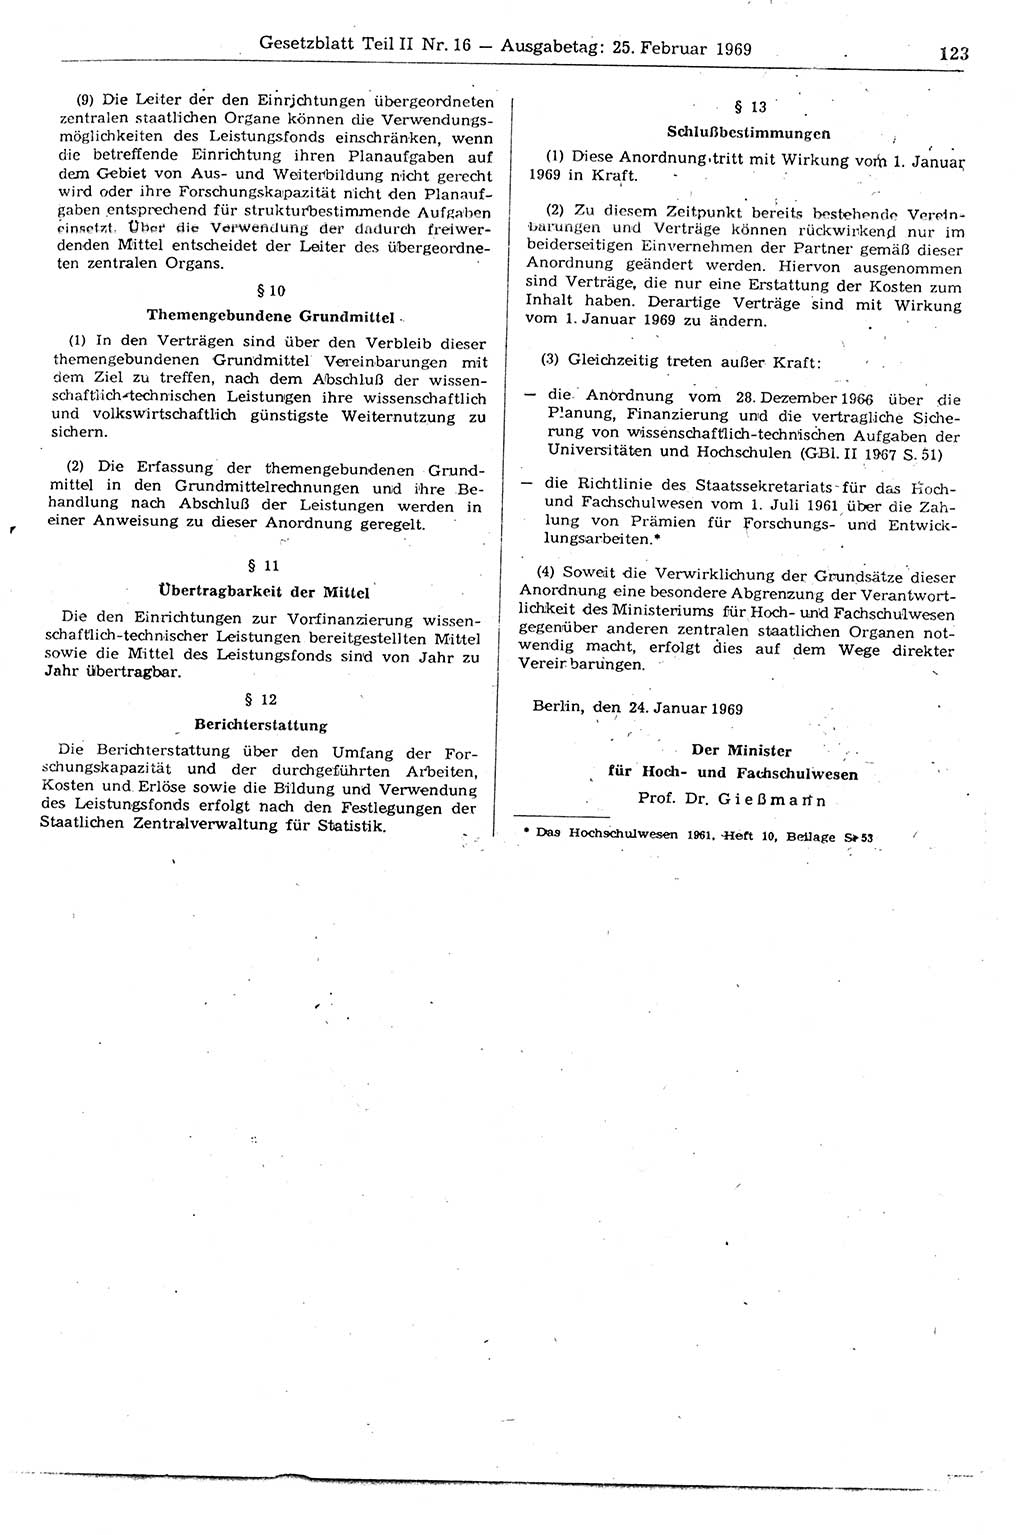 Gesetzblatt (GBl.) der Deutschen Demokratischen Republik (DDR) Teil ⅠⅠ 1969, Seite 123 (GBl. DDR ⅠⅠ 1969, S. 123)